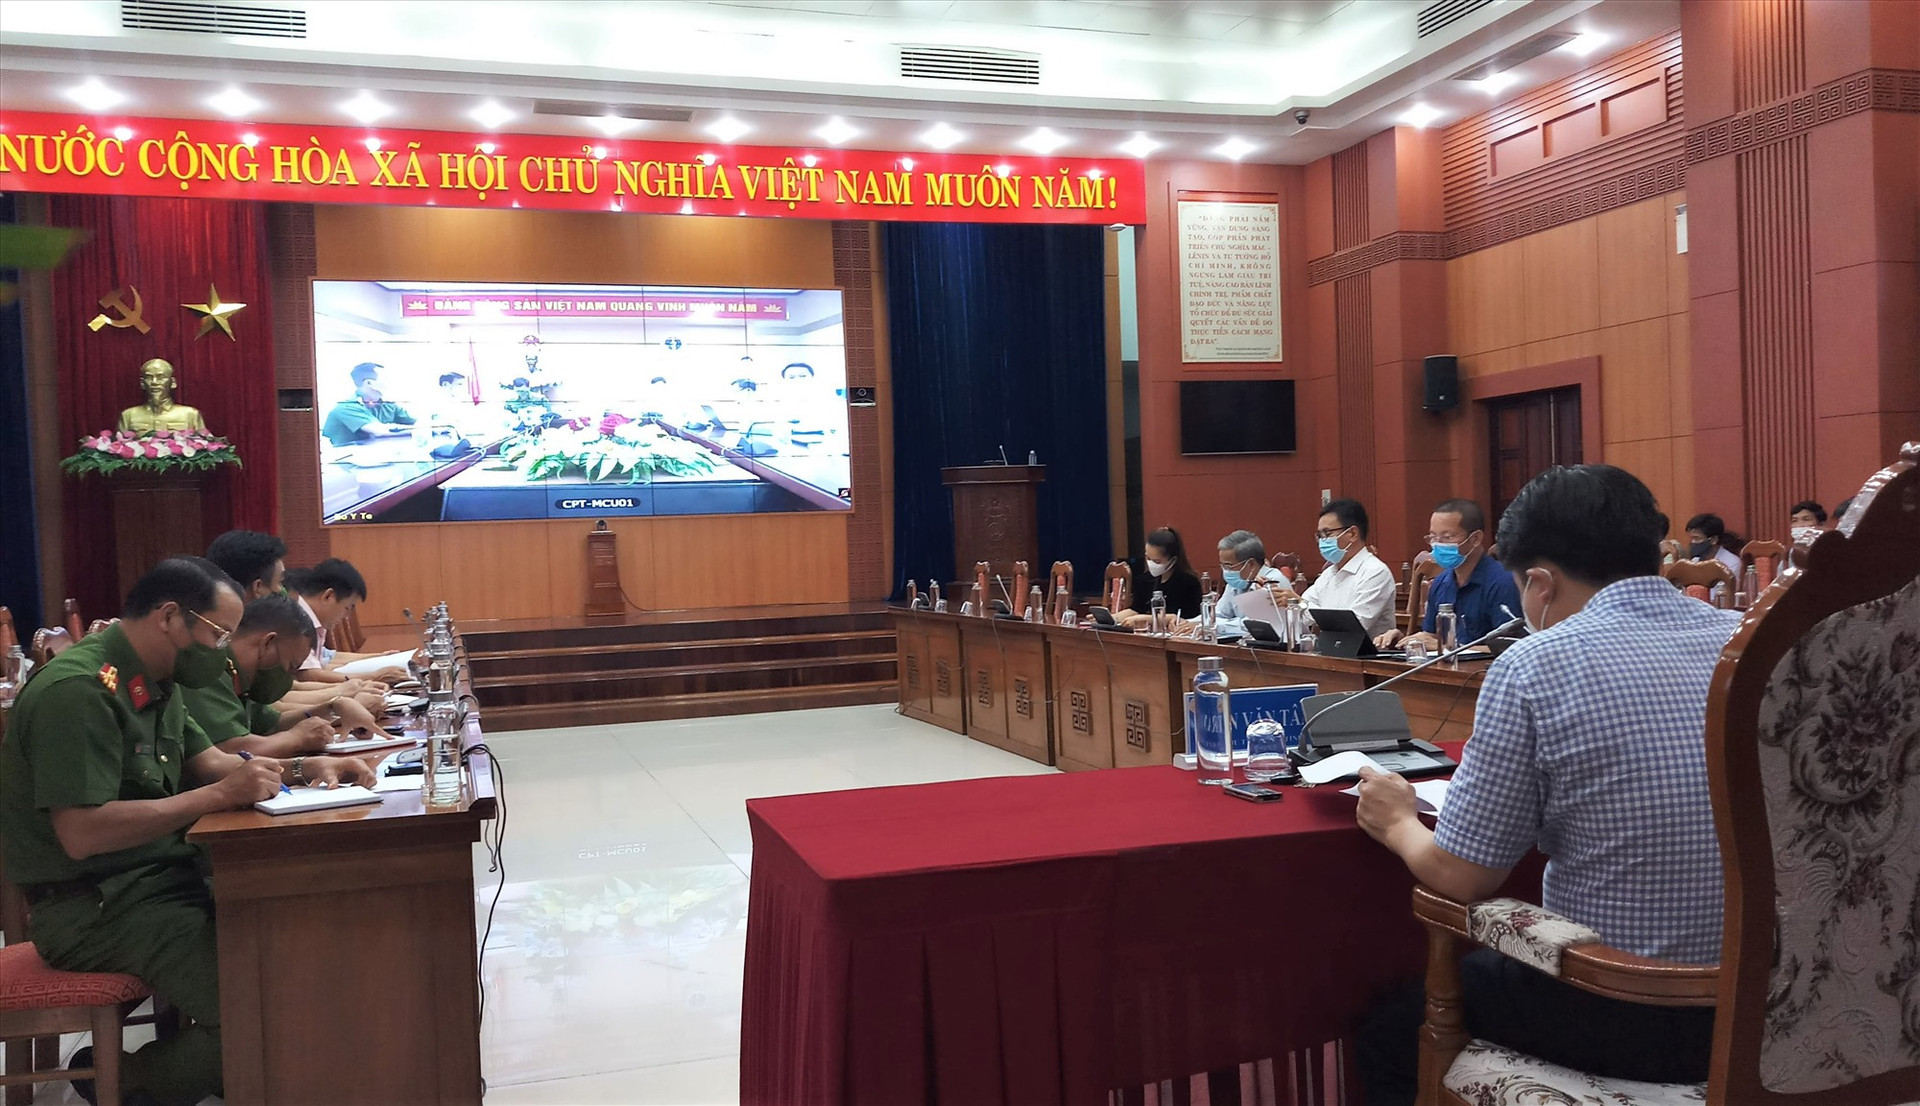 Các đại biểu tham dự hội nghị trực tuyến tại điểm cầu Quảng Nam. Ảnh: A.N